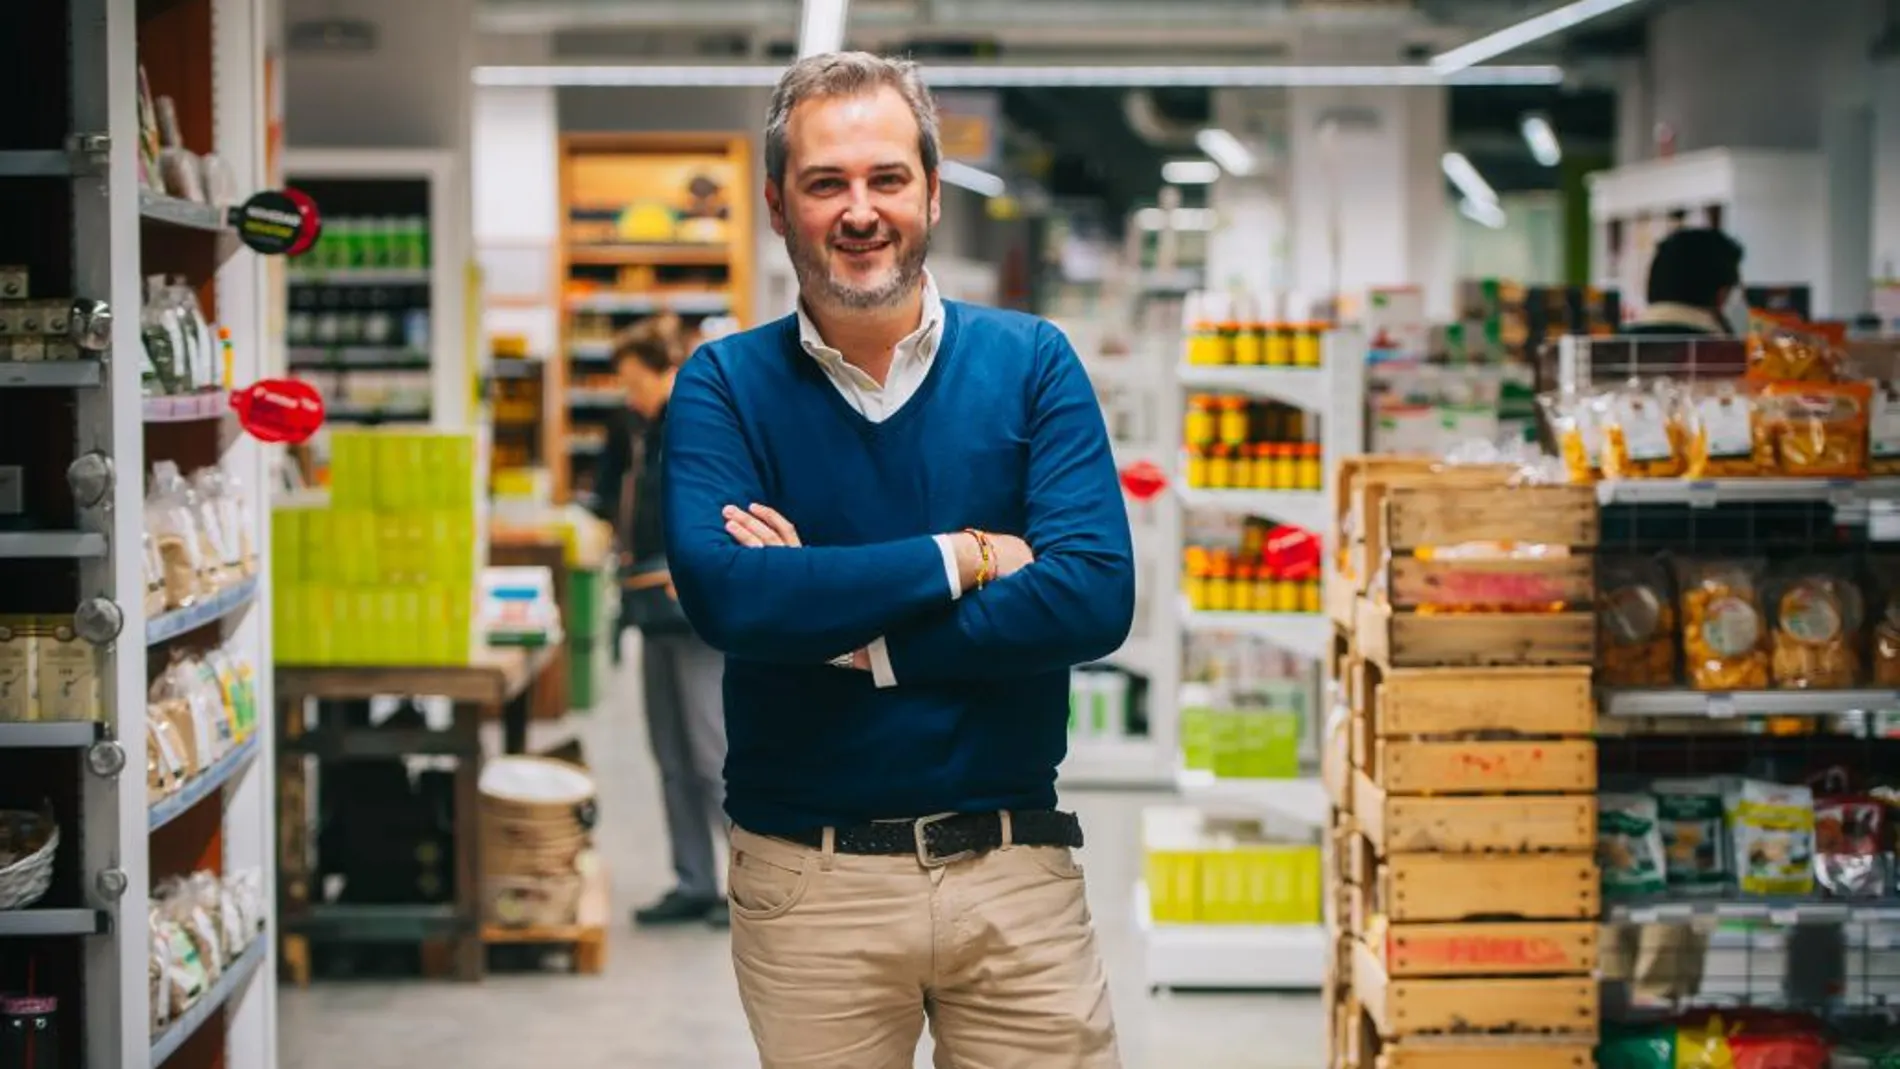 Para hablar de empresas valencianas de éxito, Herbolario Navarro es un imprescindible. Muestra de su éxito es que de los 18 millones de ventas de 2016 este año pasará a 24